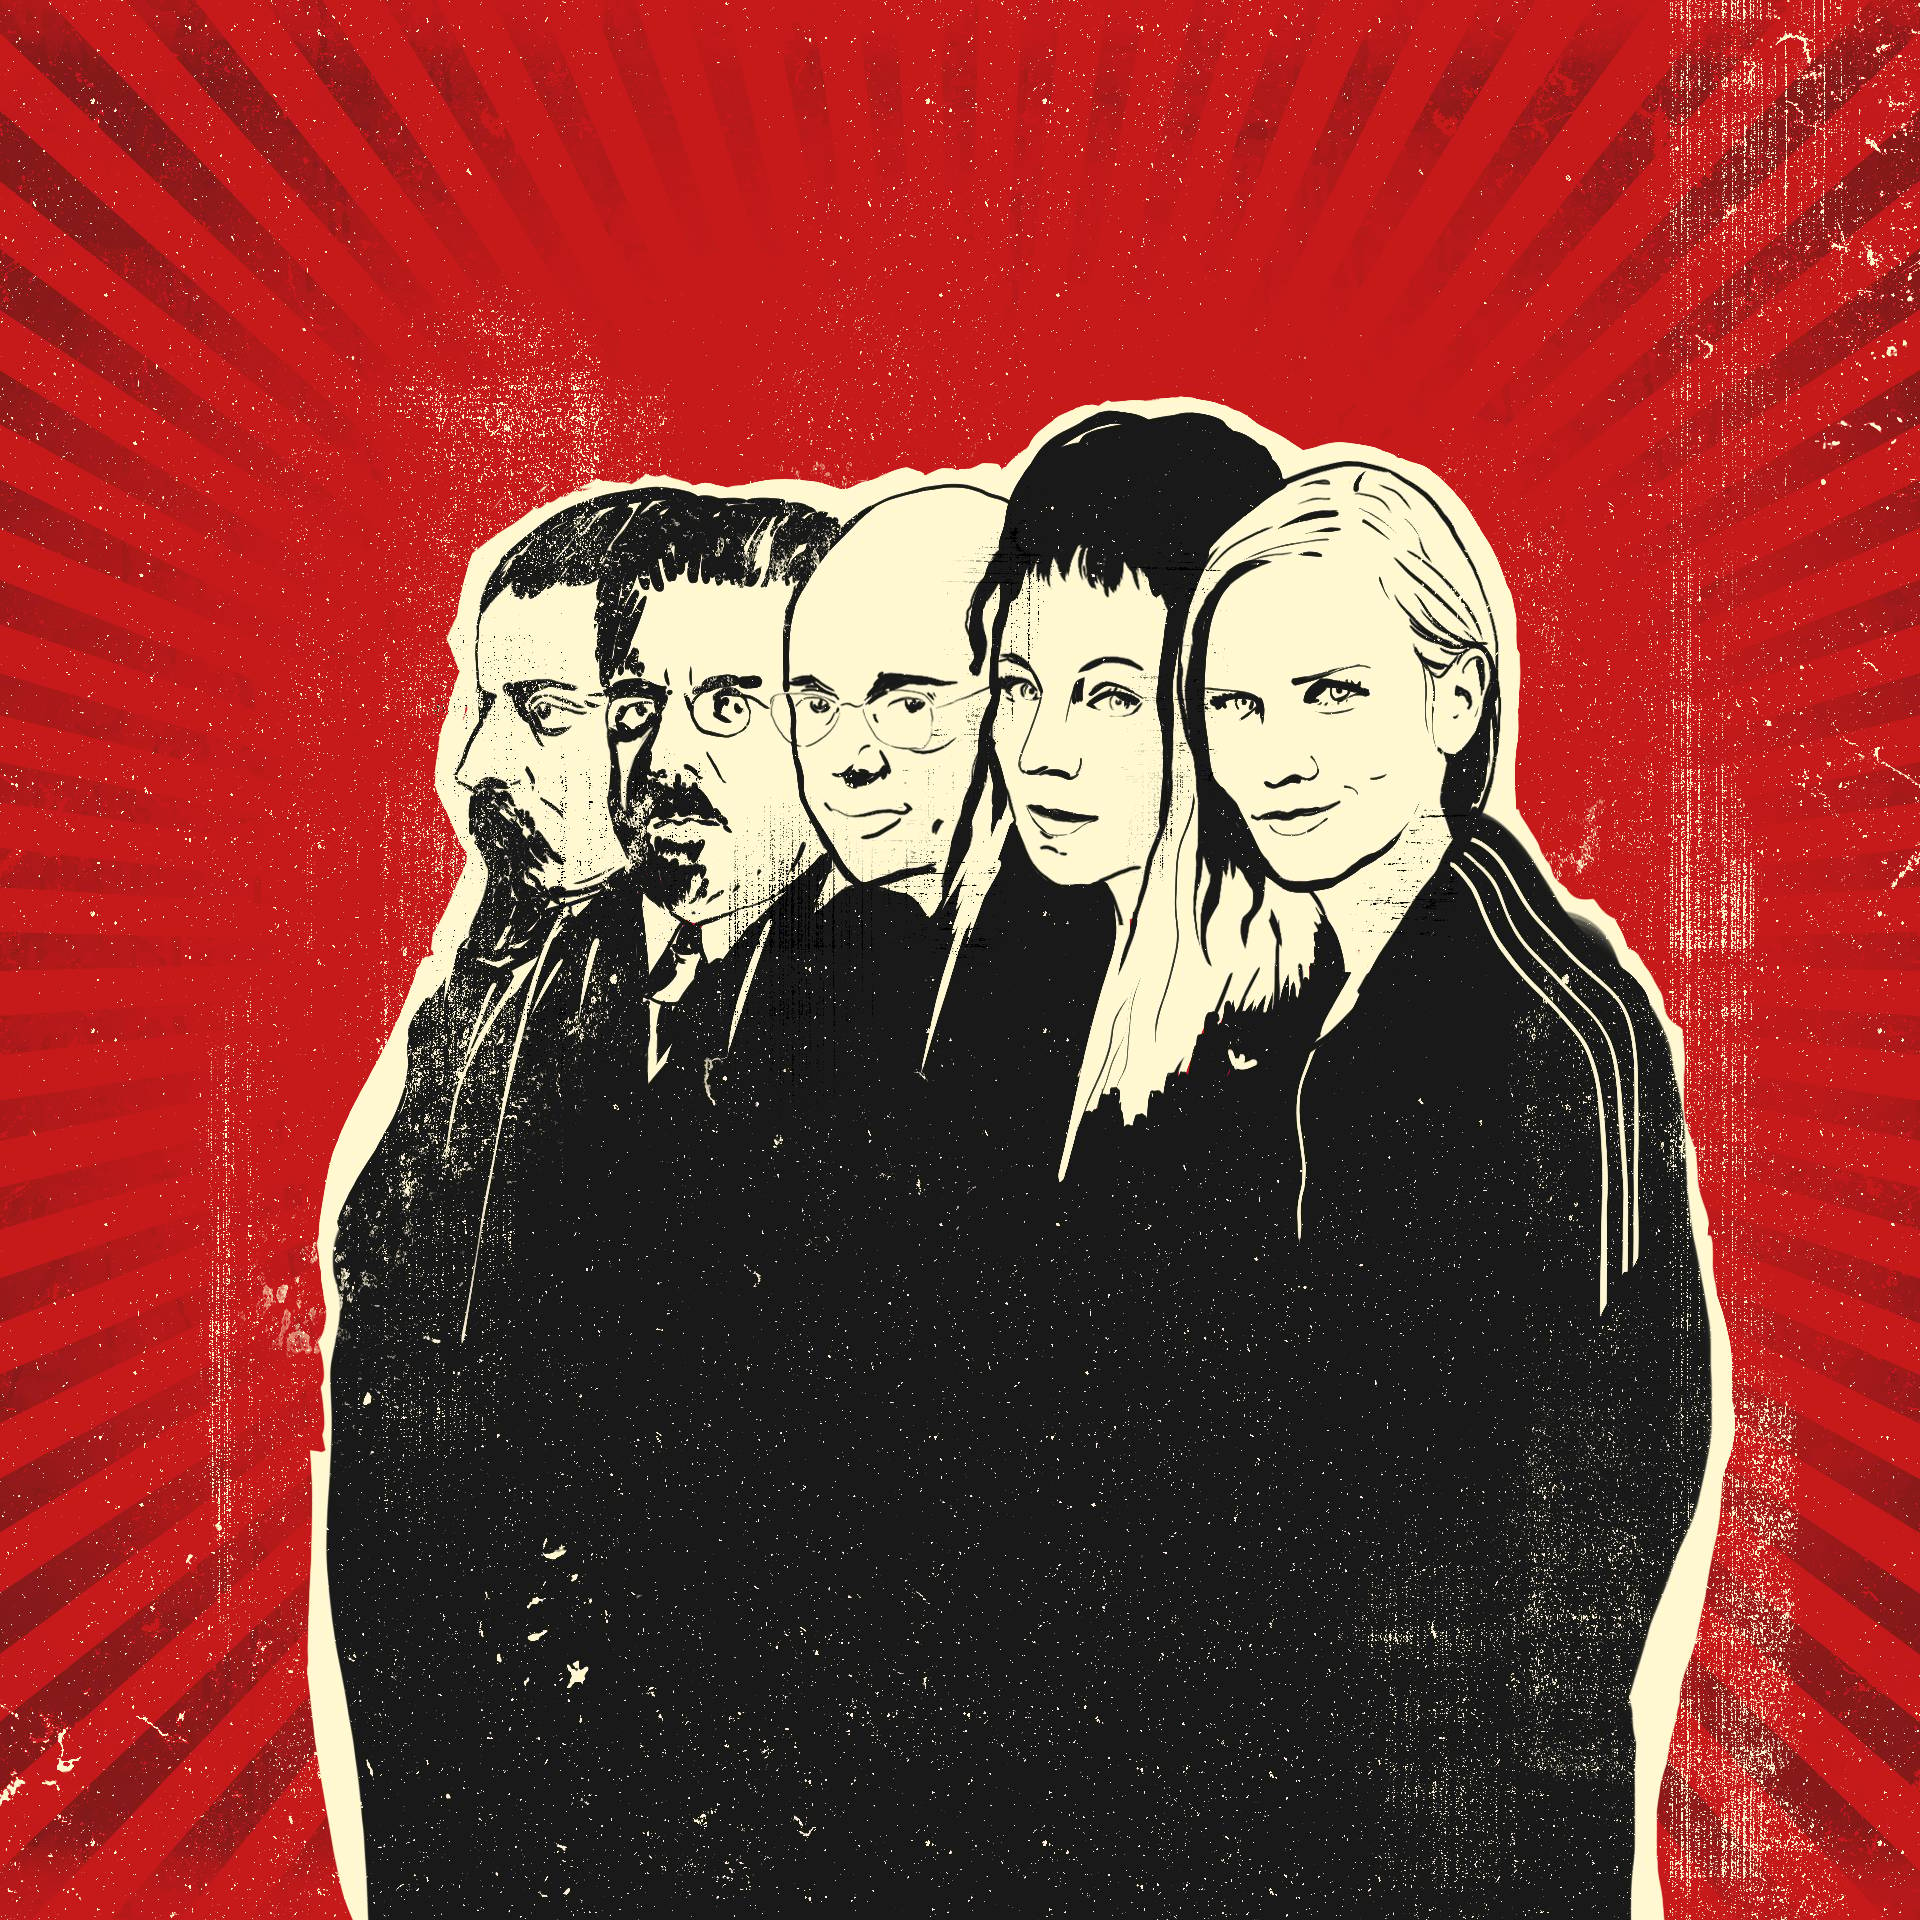 Ilustracja, przedstawiająca sylwetki pisarzy i pisarek, od lewej: Sienkiewicz, Prus, Lem, Tokarczuk, Masłowska, dookoła nich widać promienie czerwonego światła. Kanon lektur.